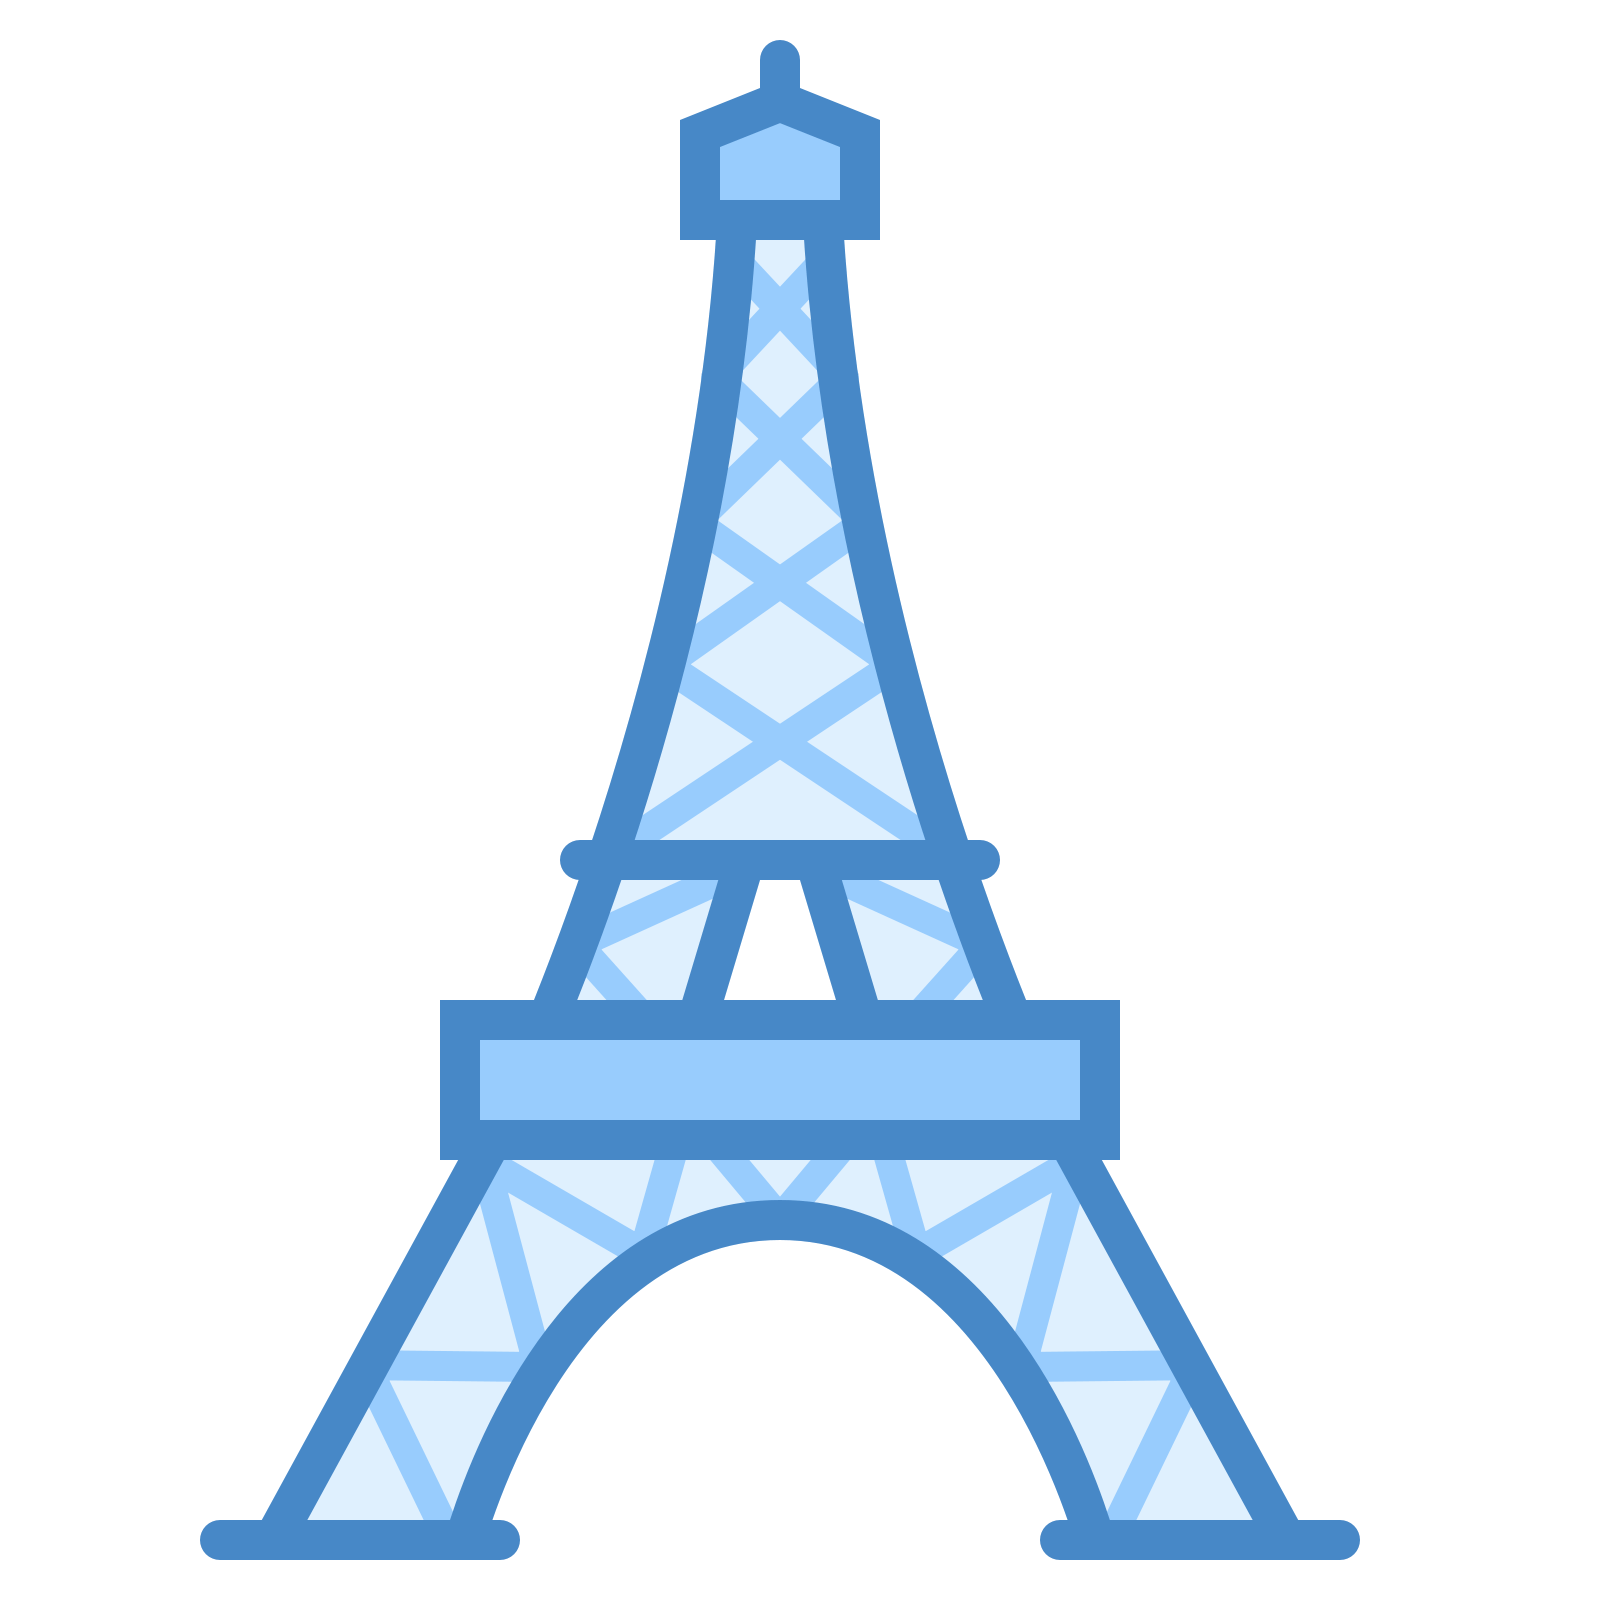 Paris Clipart Transparent Background - Eiffel Tower Miraculous